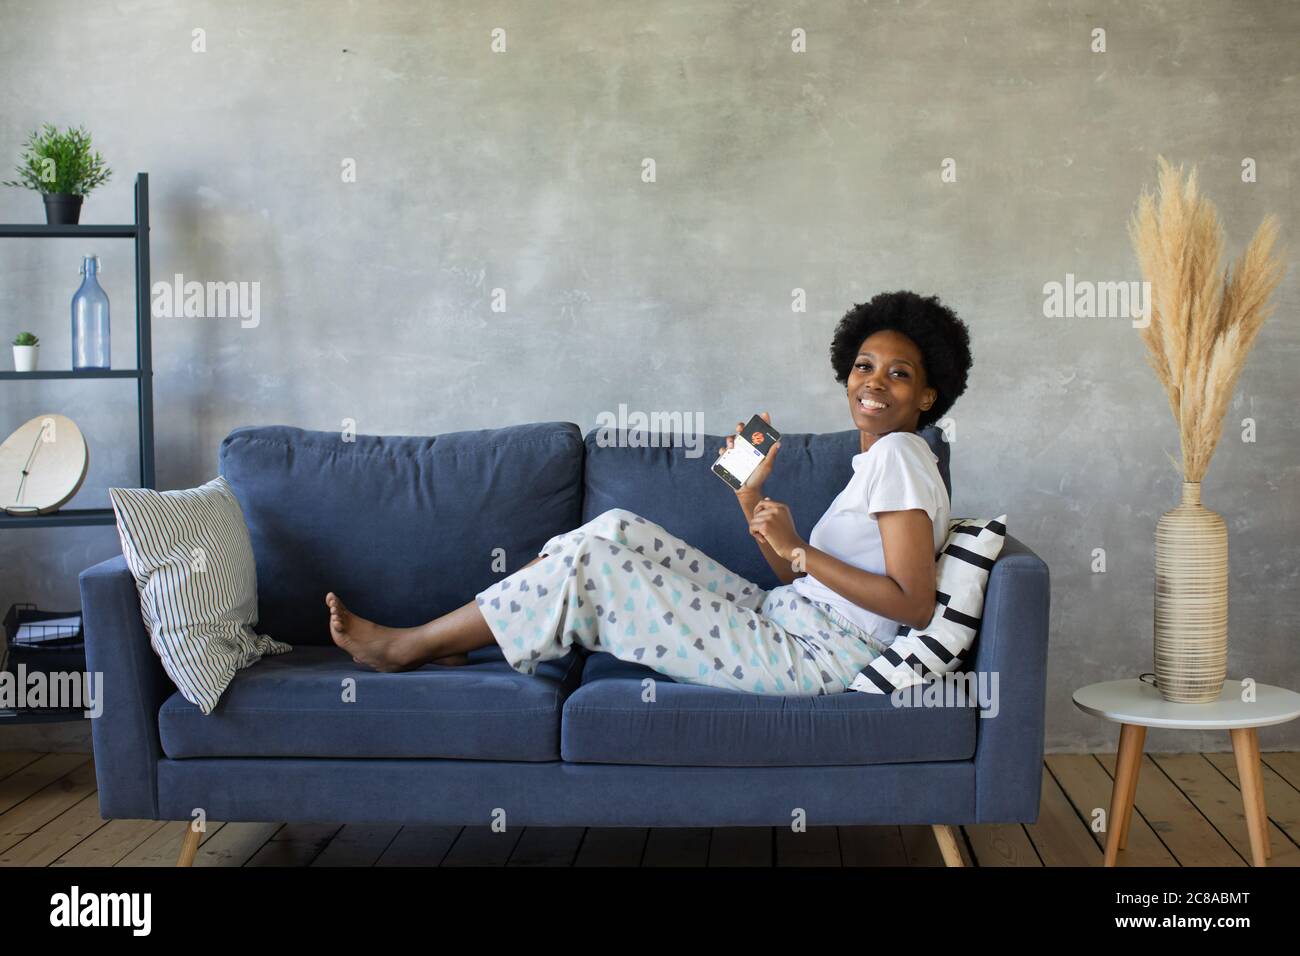 Ragazza afroamericana che balla con il suo telefono sul divano in una stanza accogliente Foto Stock